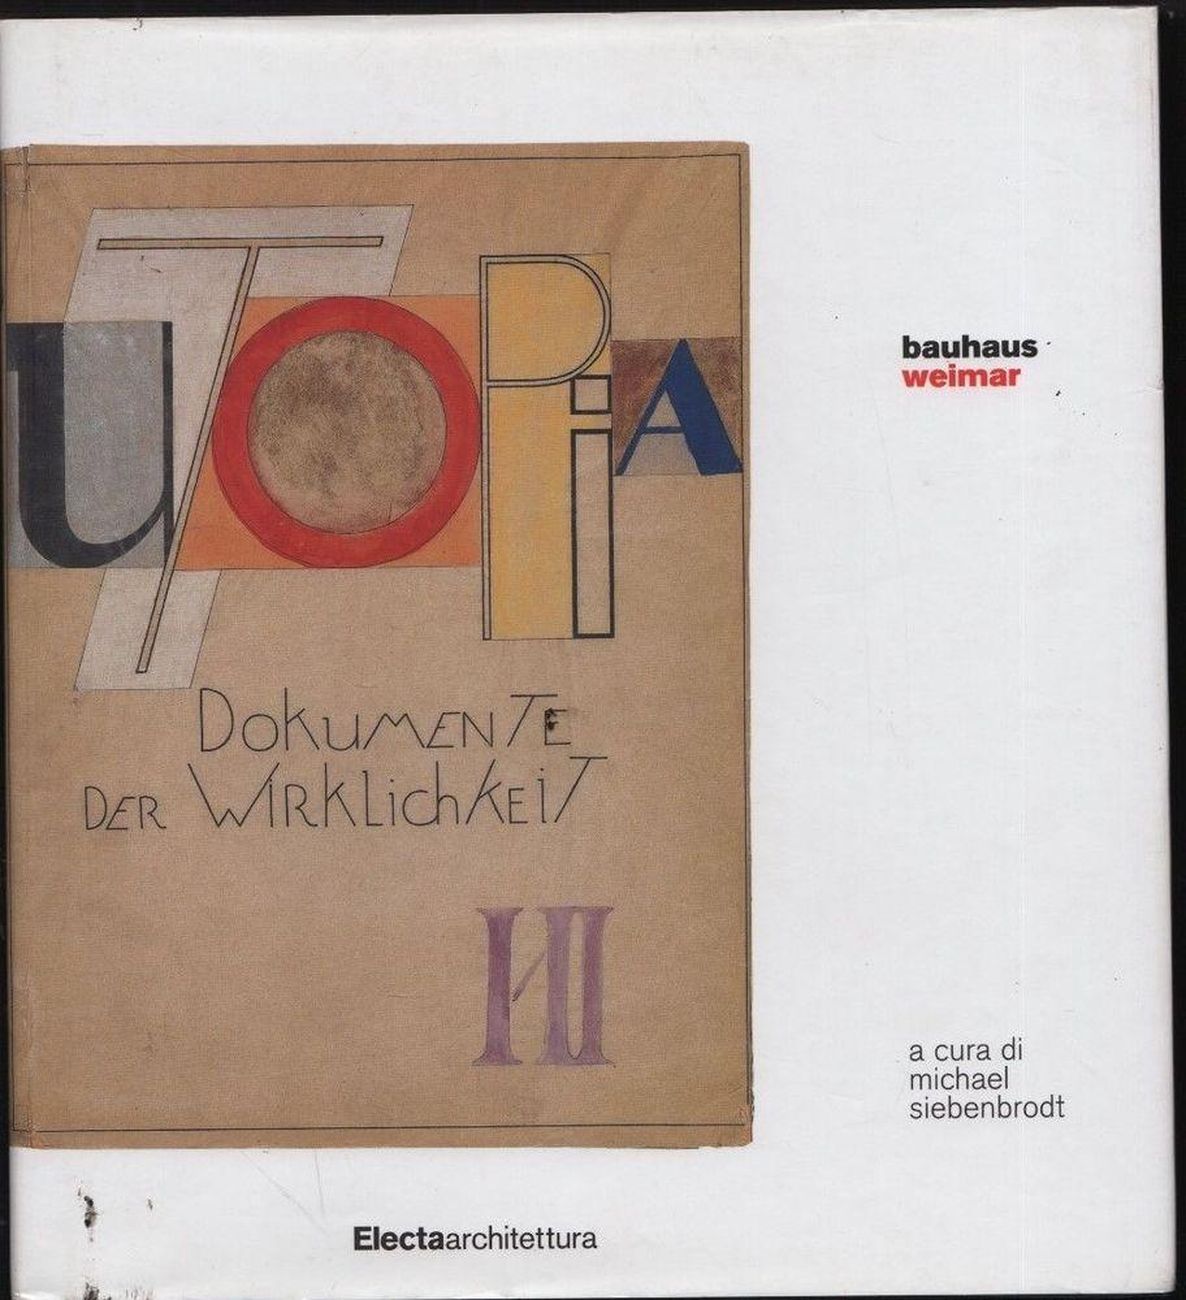 Michael Siebenbrodt (a cura di) – Bauhaus Weimar (Electa, 2008)